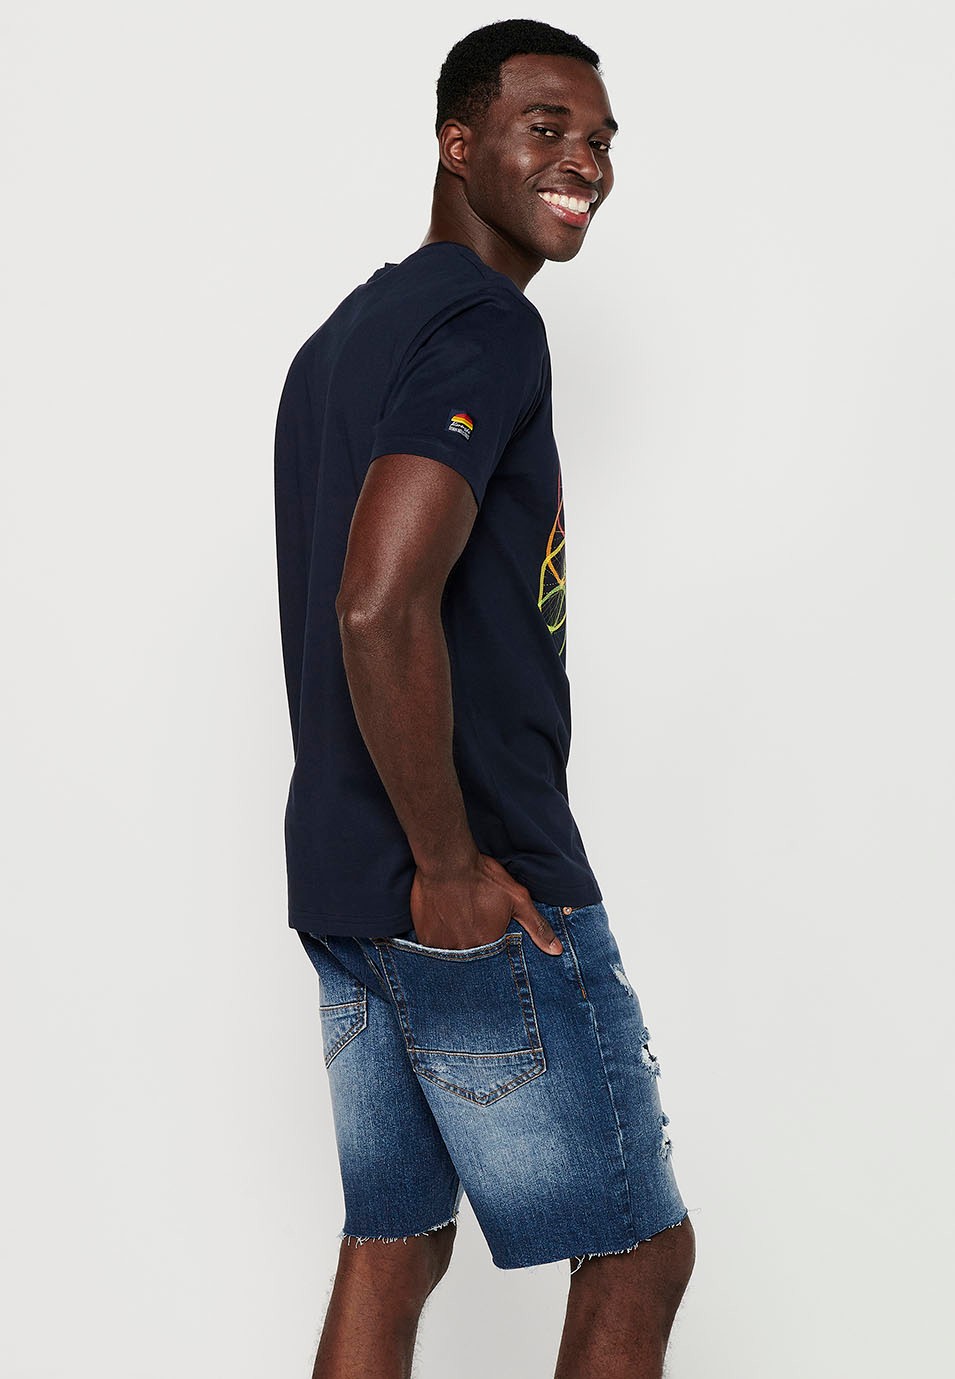 T-shirt en coton à manches courtes avec imprimé vélo sur le devant, coloris marine pour homme 6